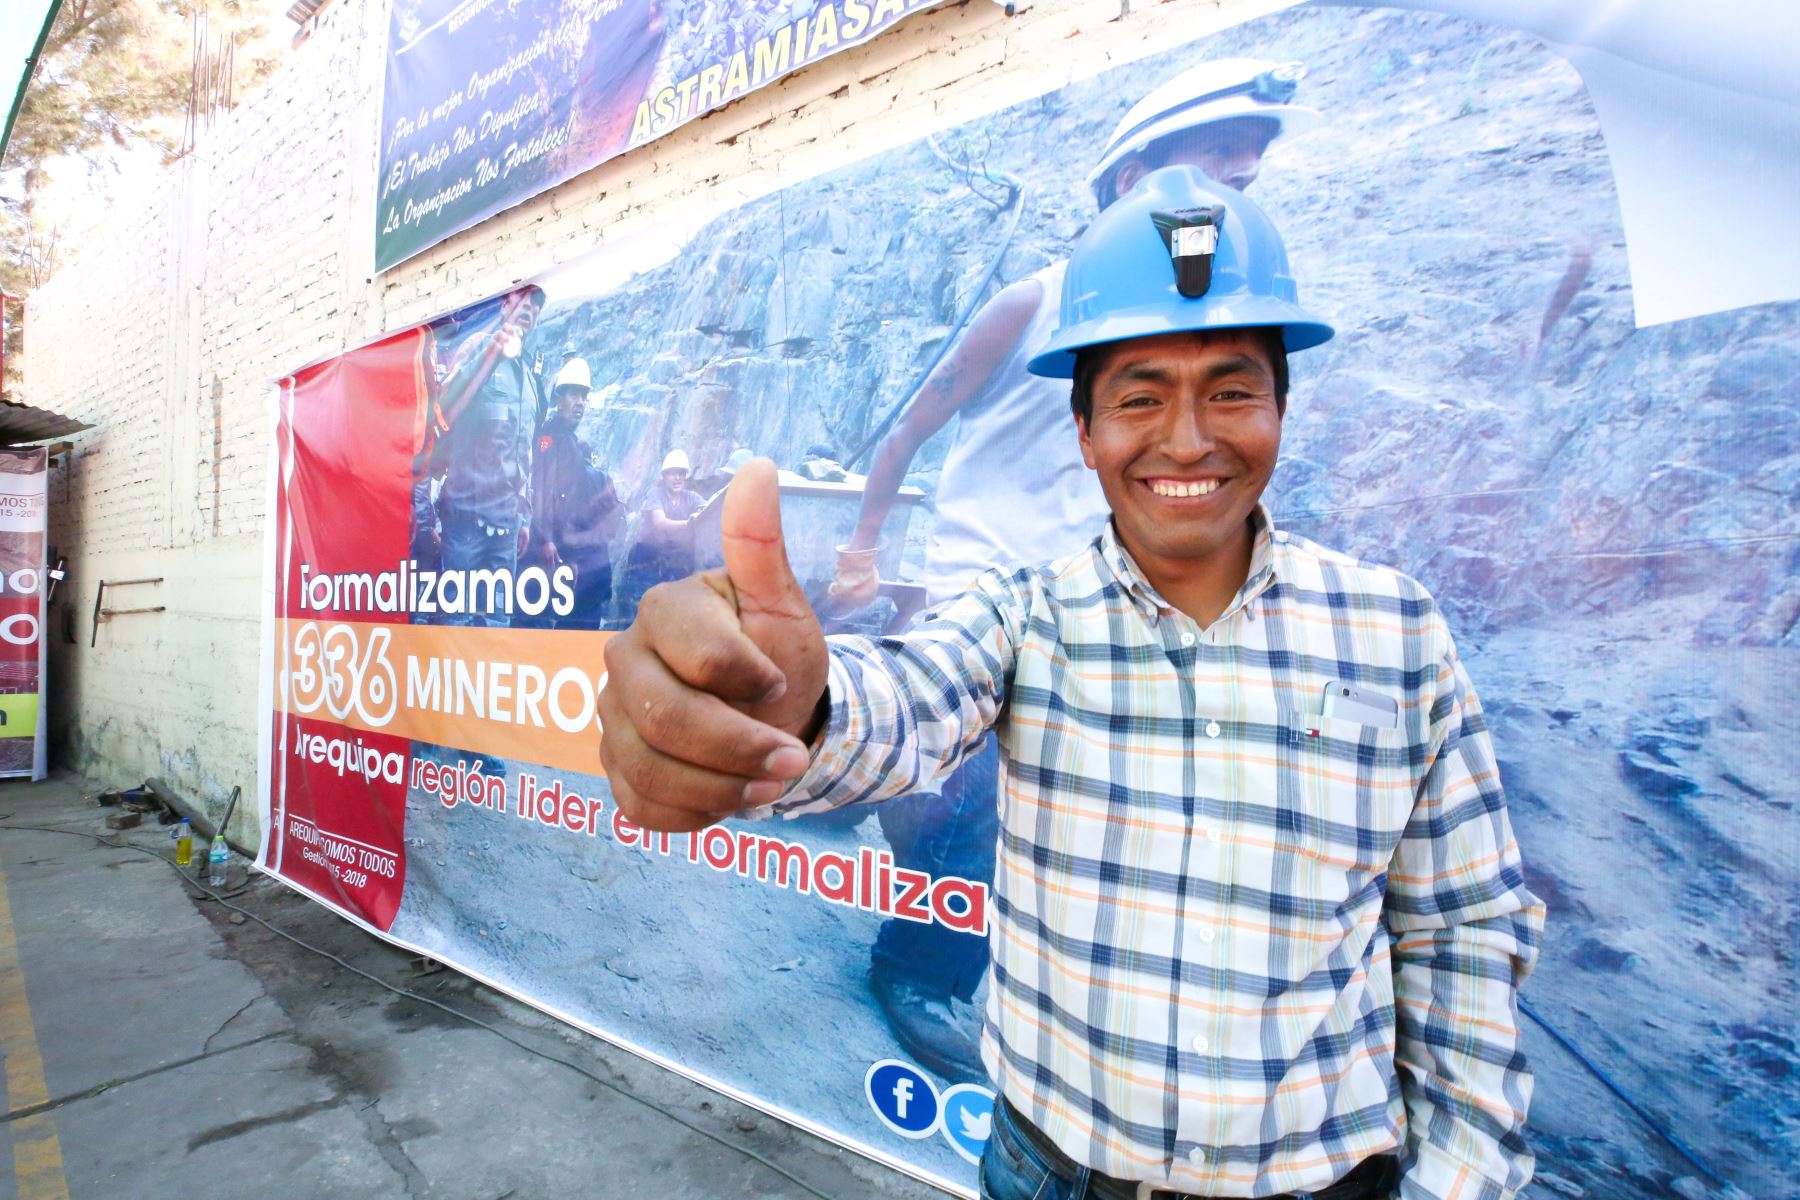 Entregan resolución de formalización a más de 300 mineros artesanales de Arequipa.